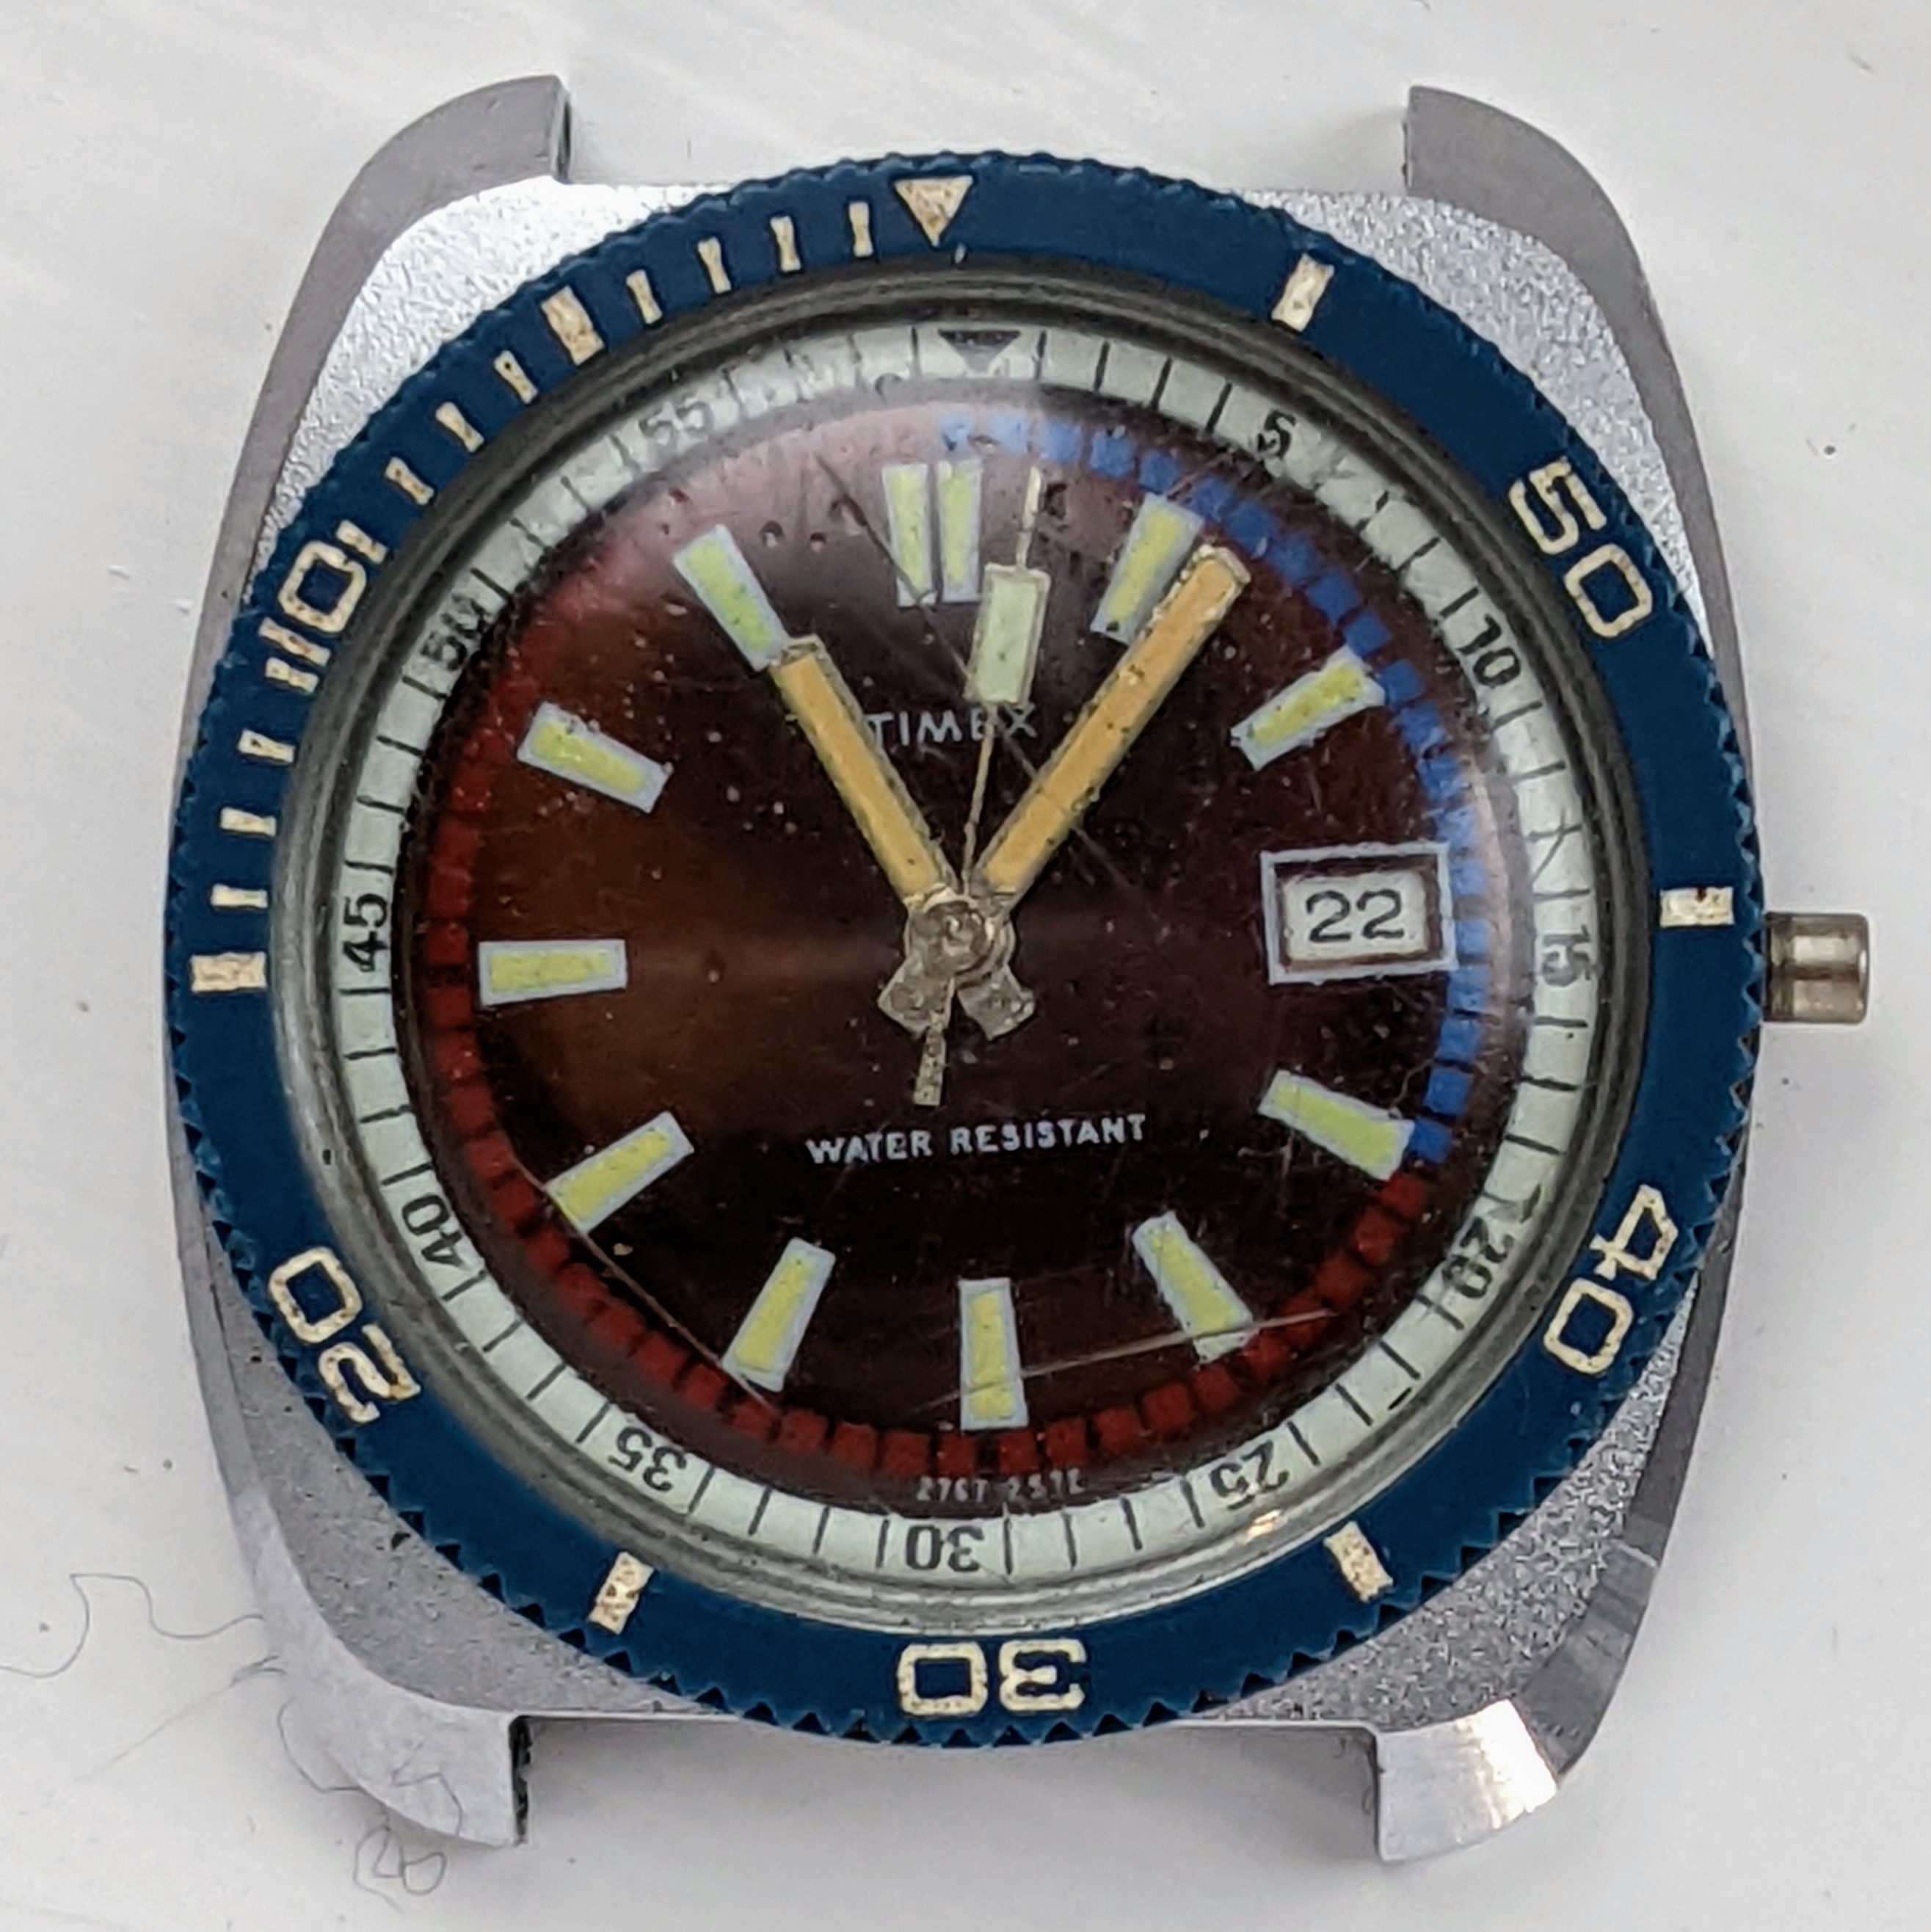 Timex Marlin 27671 2572 [1972] Dive Watch